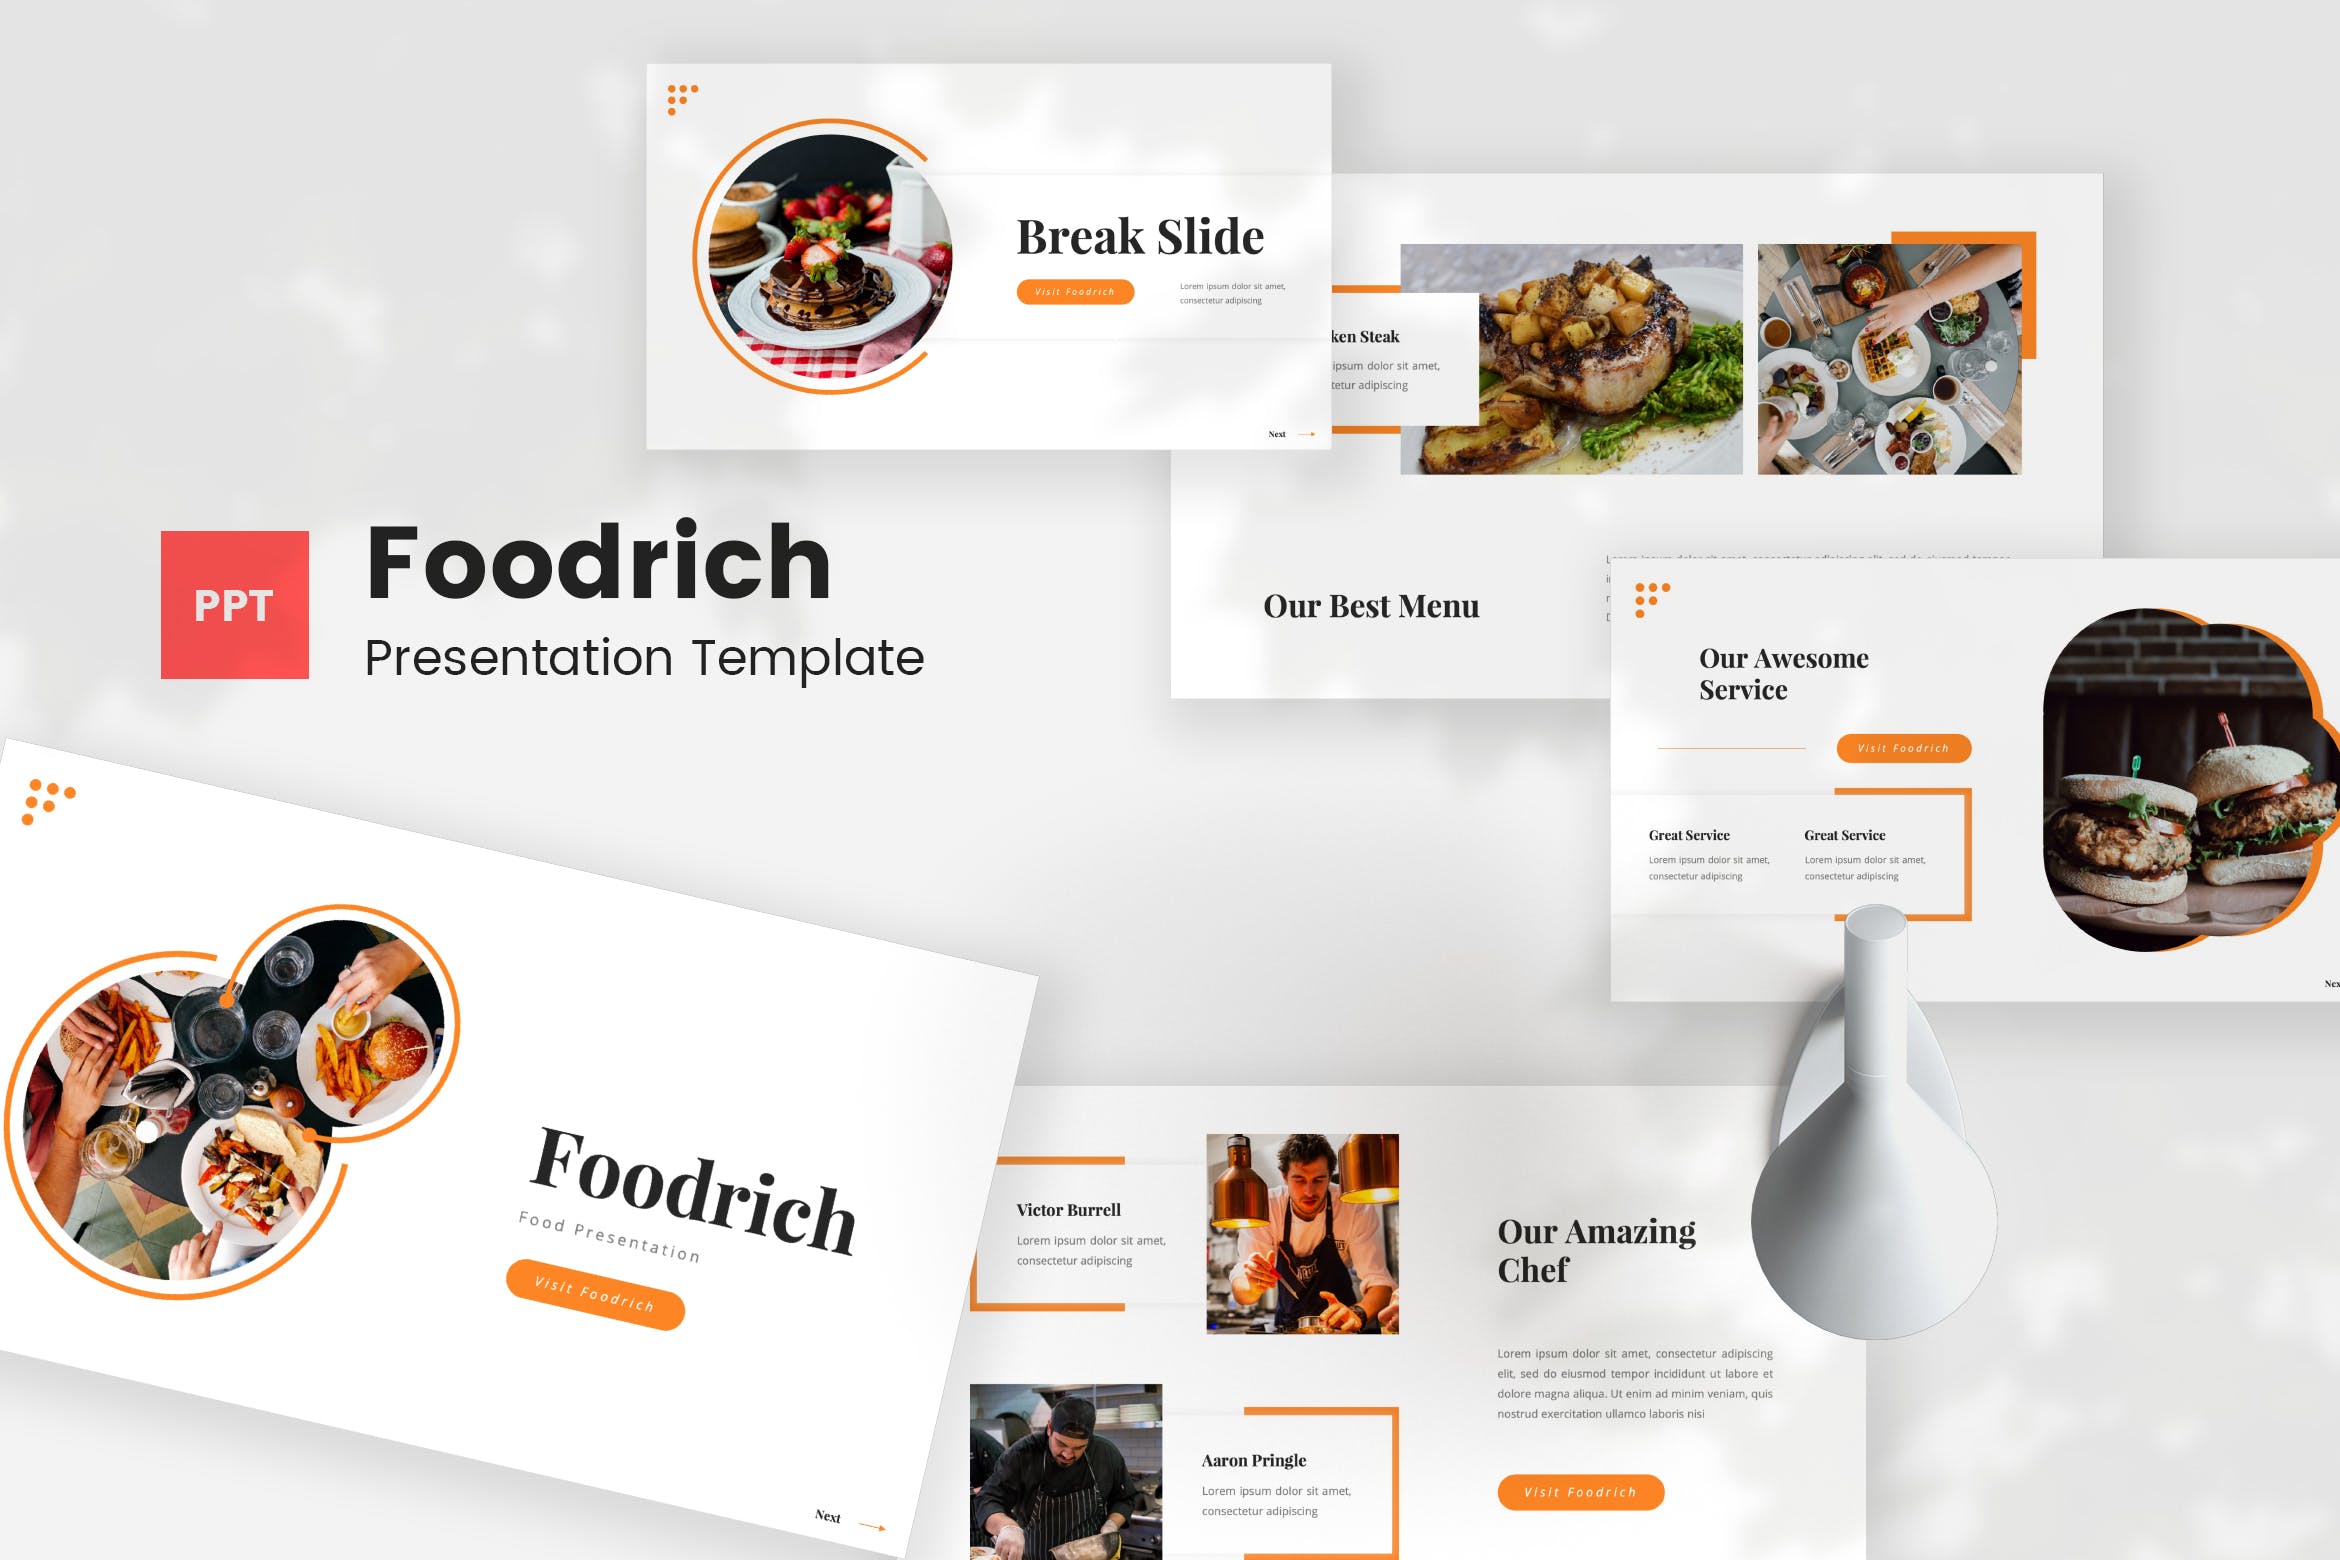 餐厅美食演示PPT模板 Foodrich – Food PowerPoint Template 幻灯图表 第1张